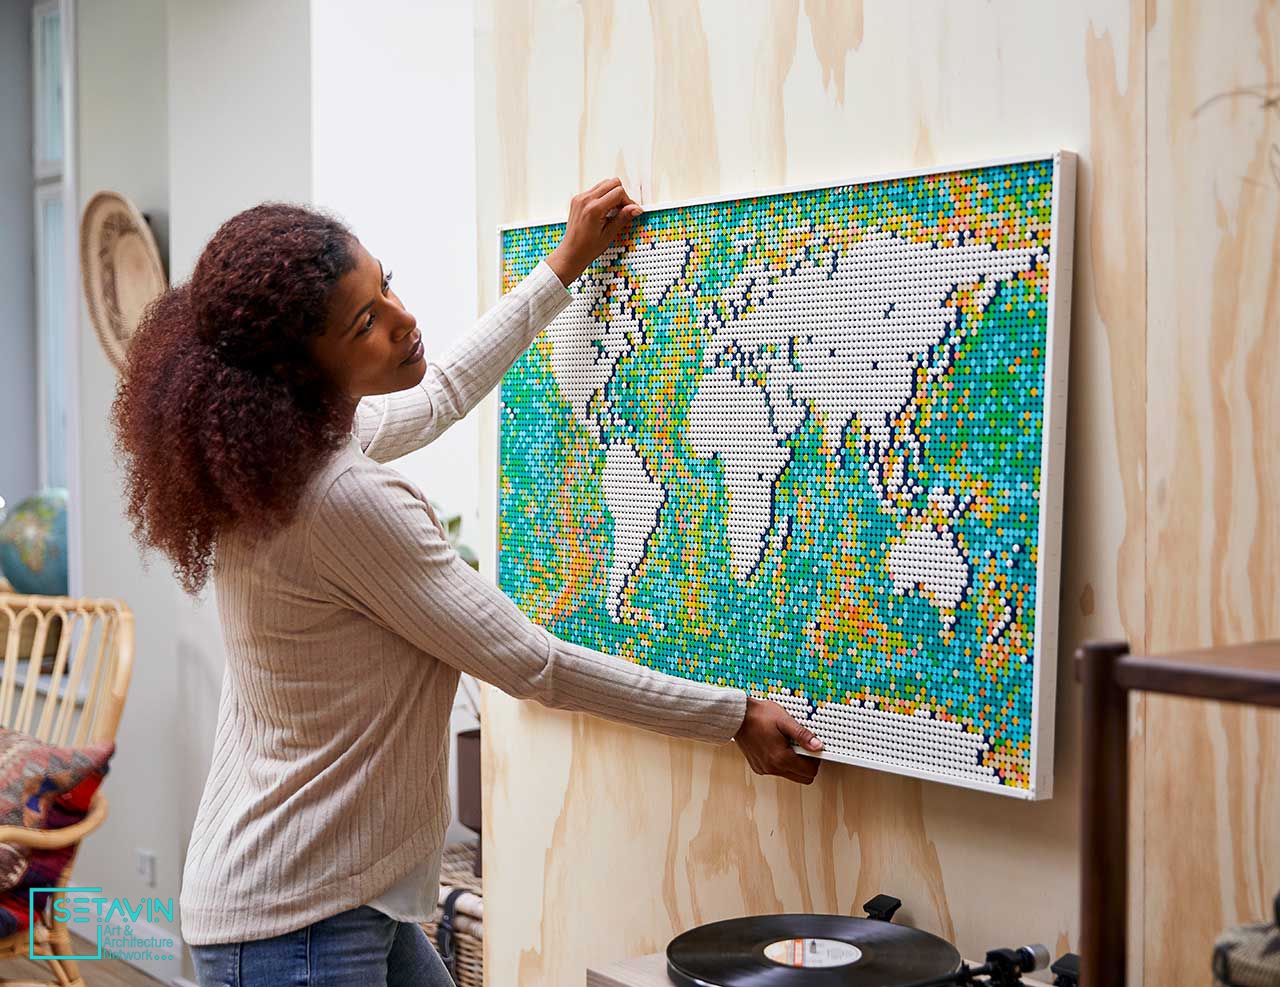 رونمایی شرکت LEGO از نقشه جهان،مجموعه ای با 11695 قطعه